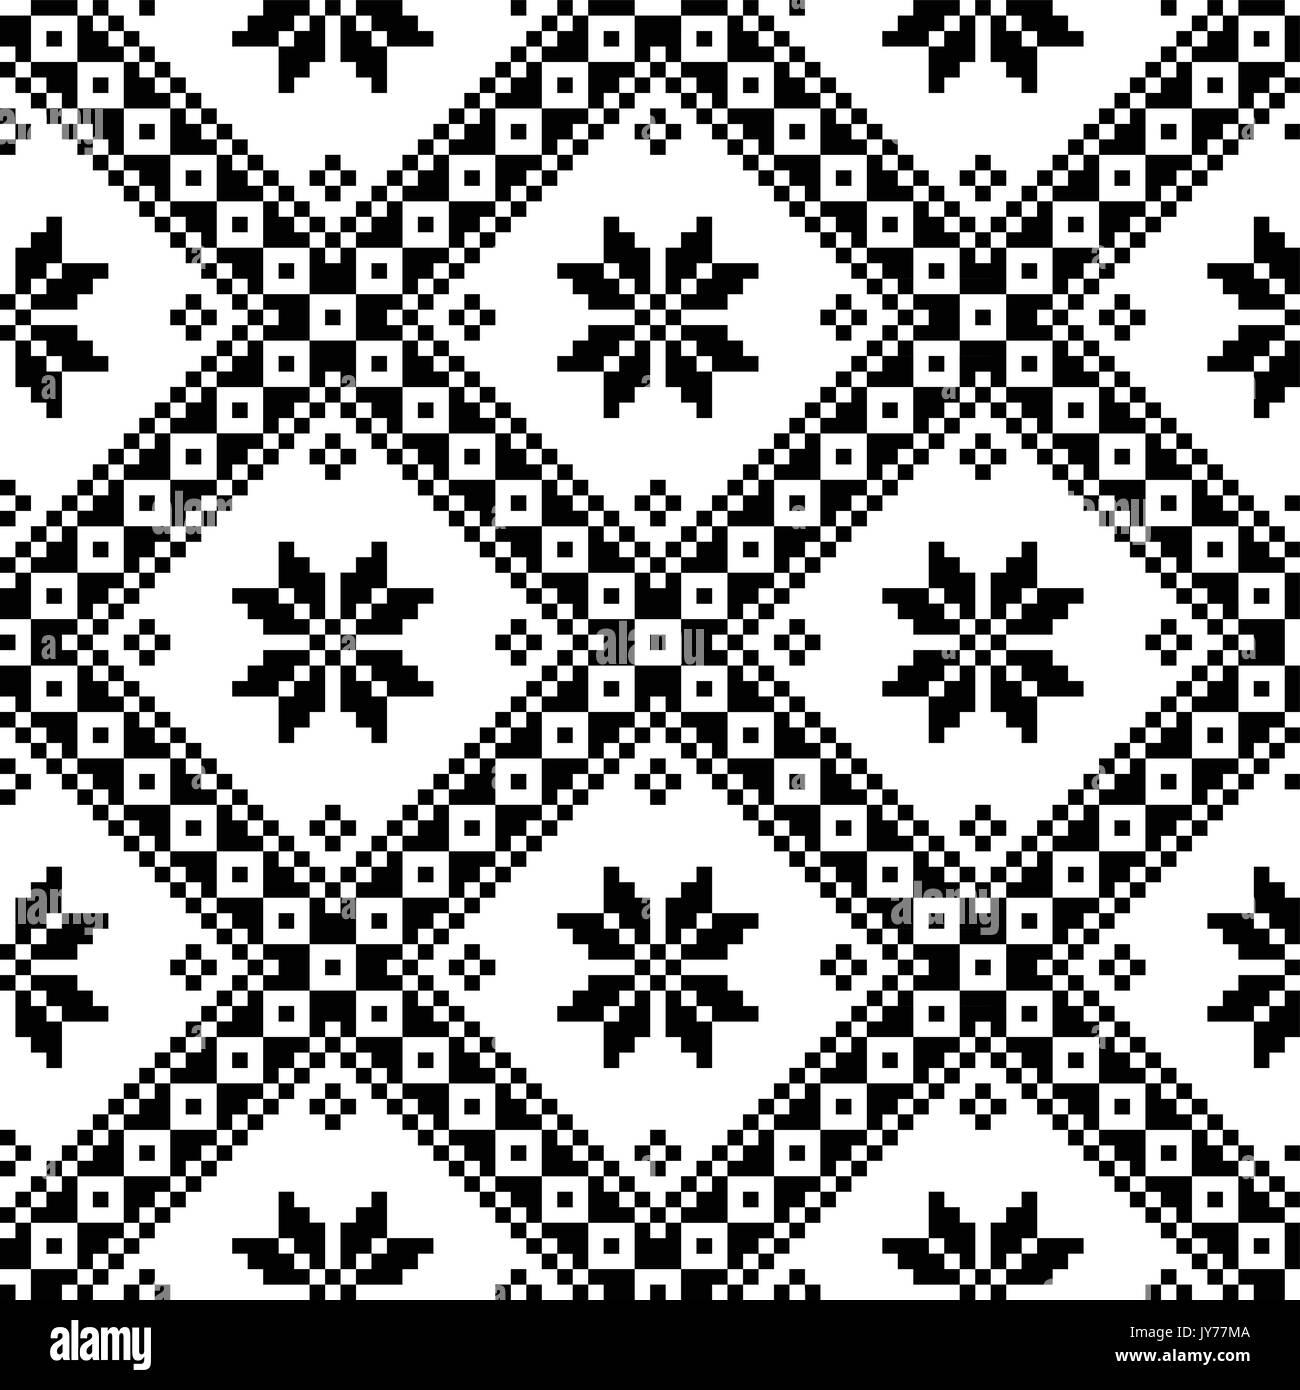 Seamless Ukrainian or Belarusian folk art embroidery black pattern   Monochrome pattern from Ukraine or Belarus background - geometric Stock Vector